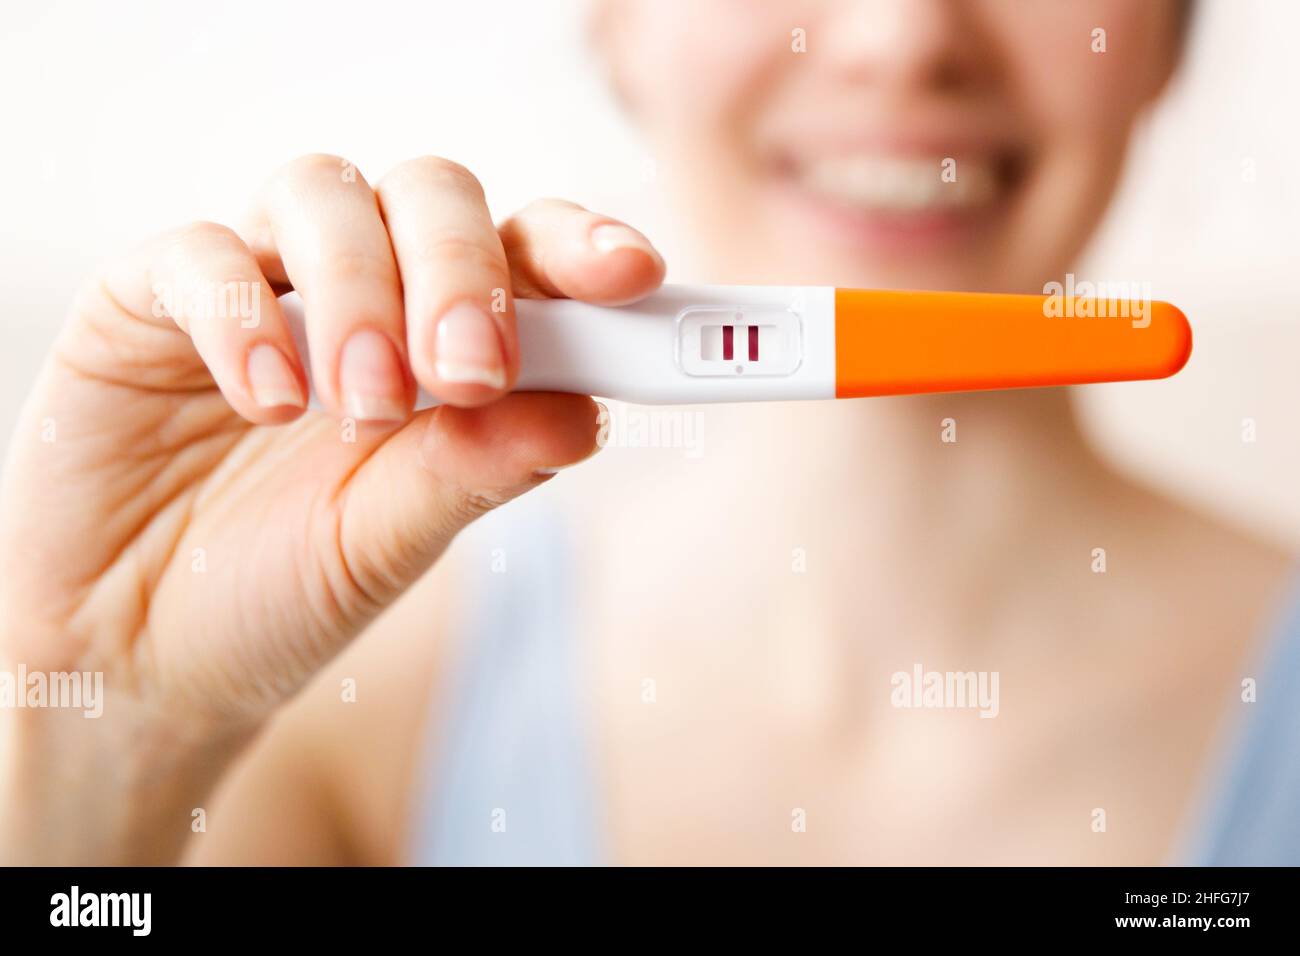 Une jeune femme heureuse tient un test de grossesse positif dans sa main, le concept d'une grossesse longtemps attendue. Banque D'Images